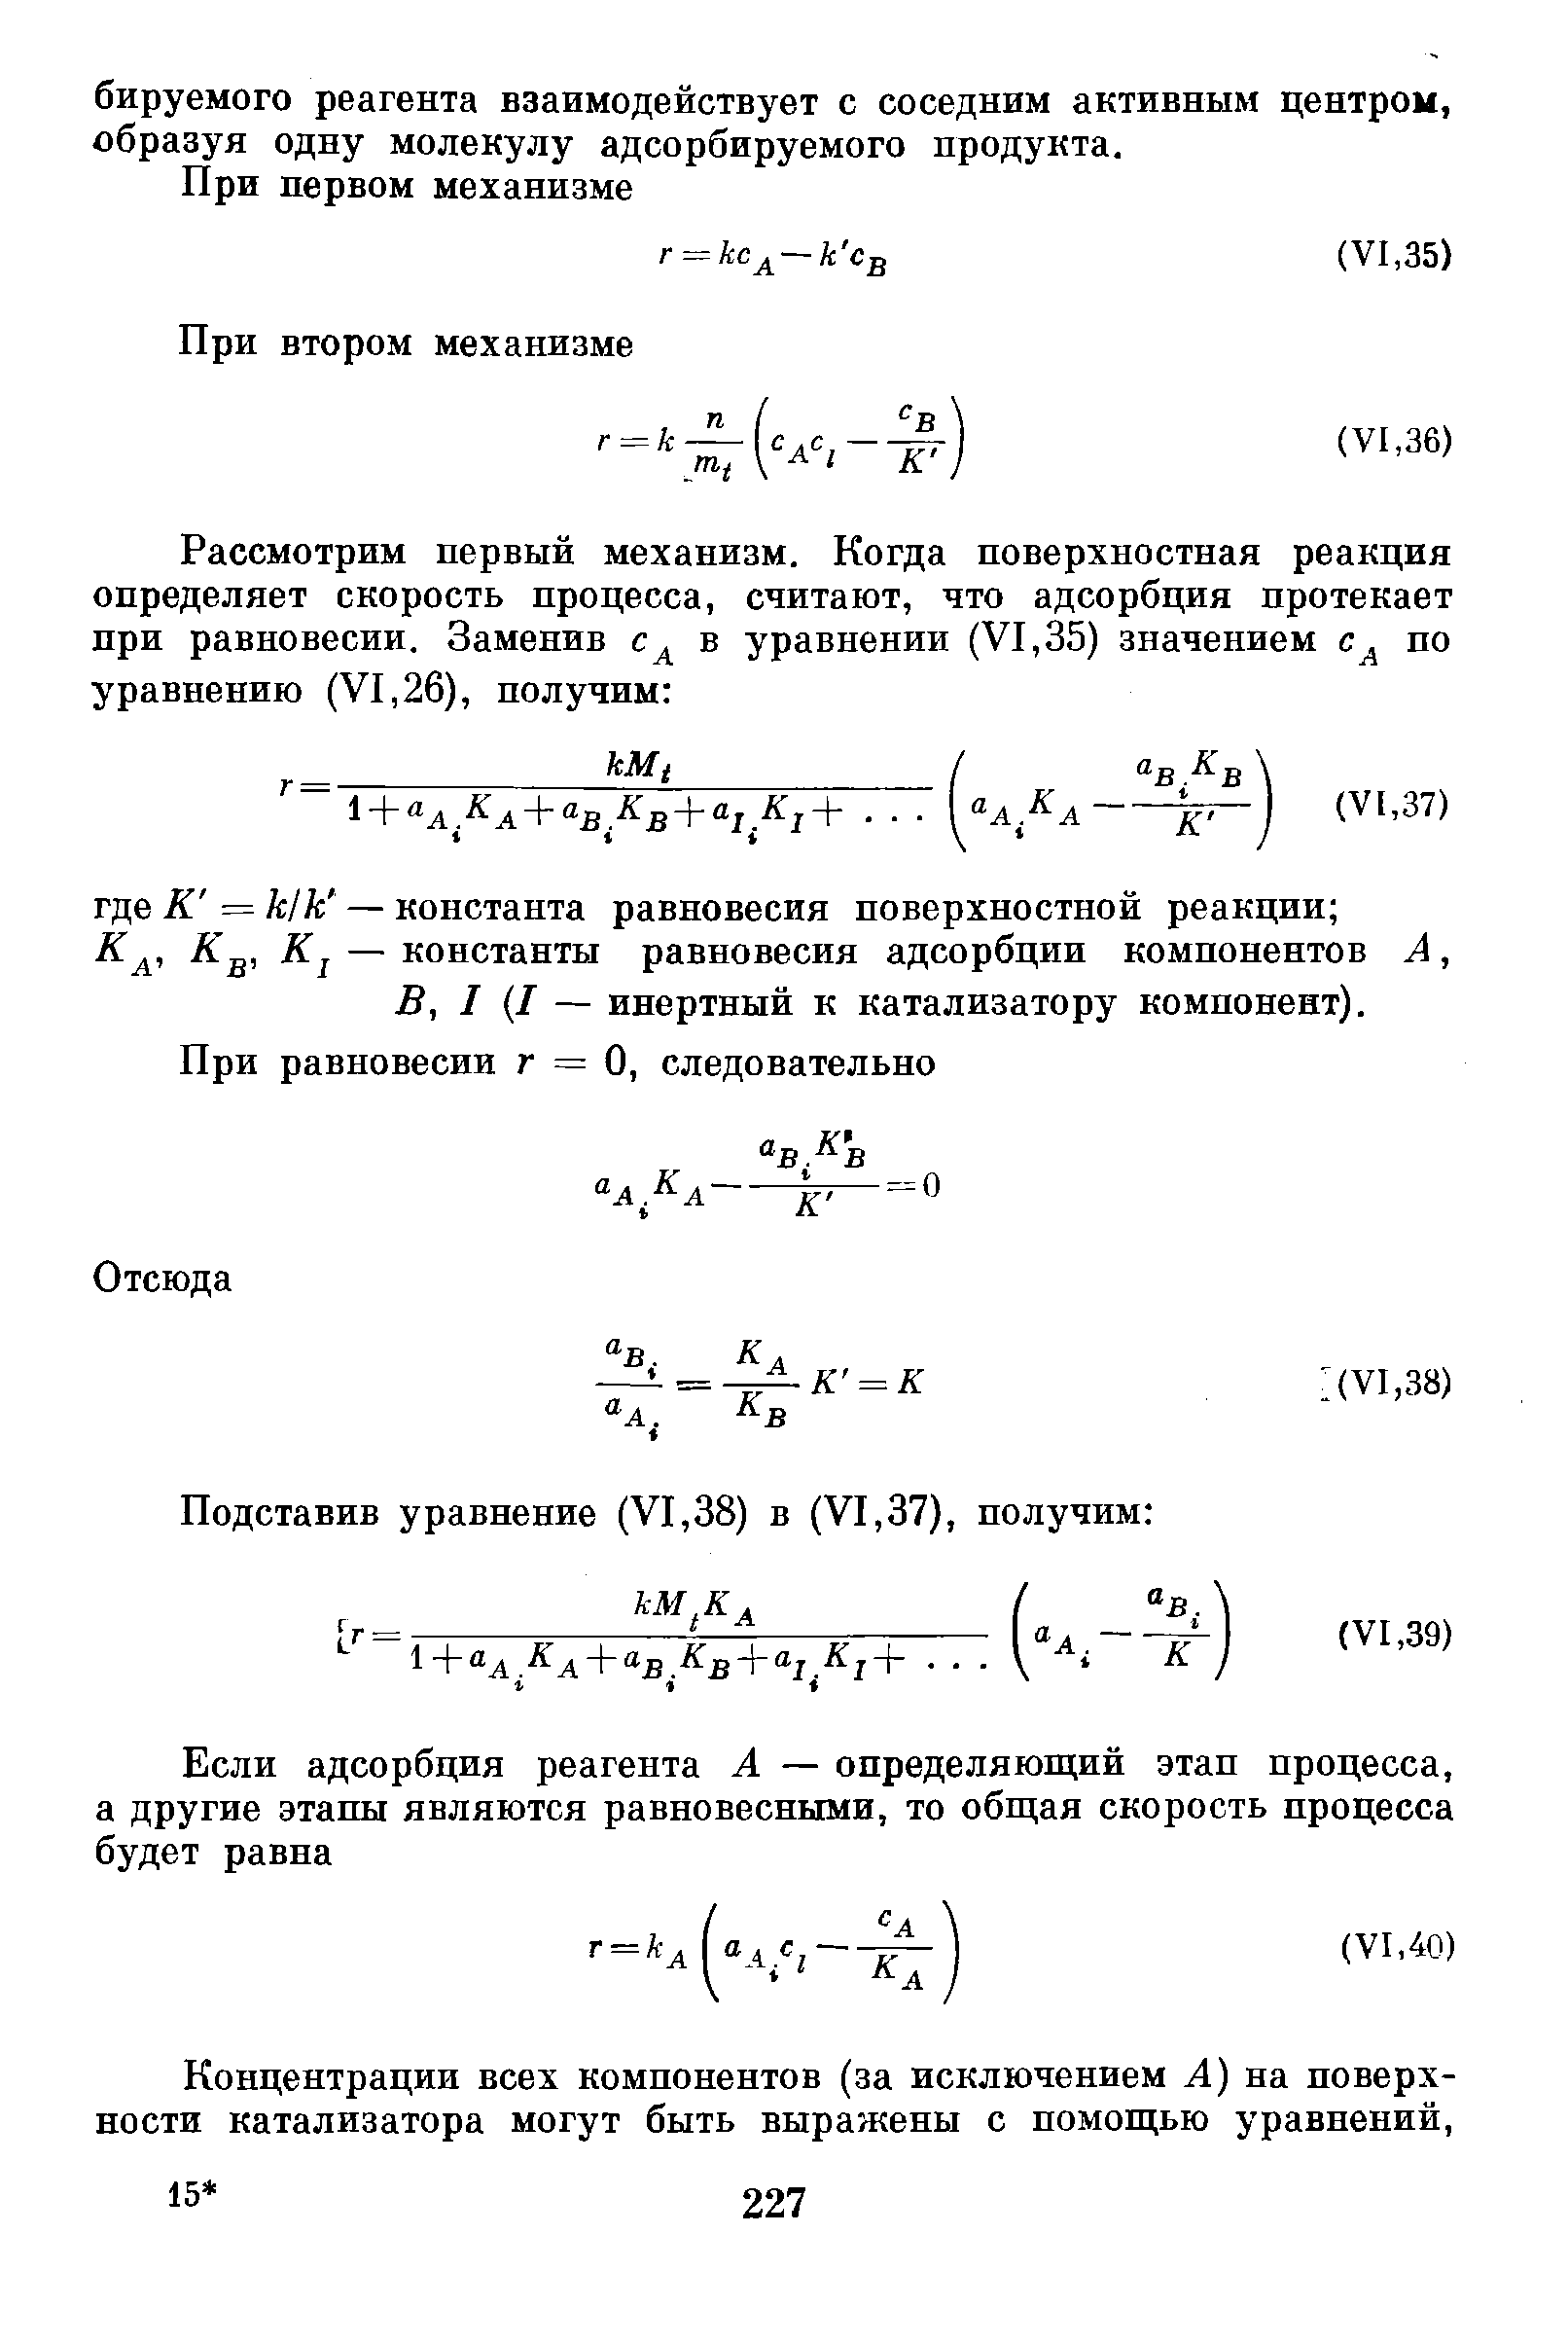 — константы равновесия адсорбции компонентов А, В, I I — инертный к катализатору компонент).